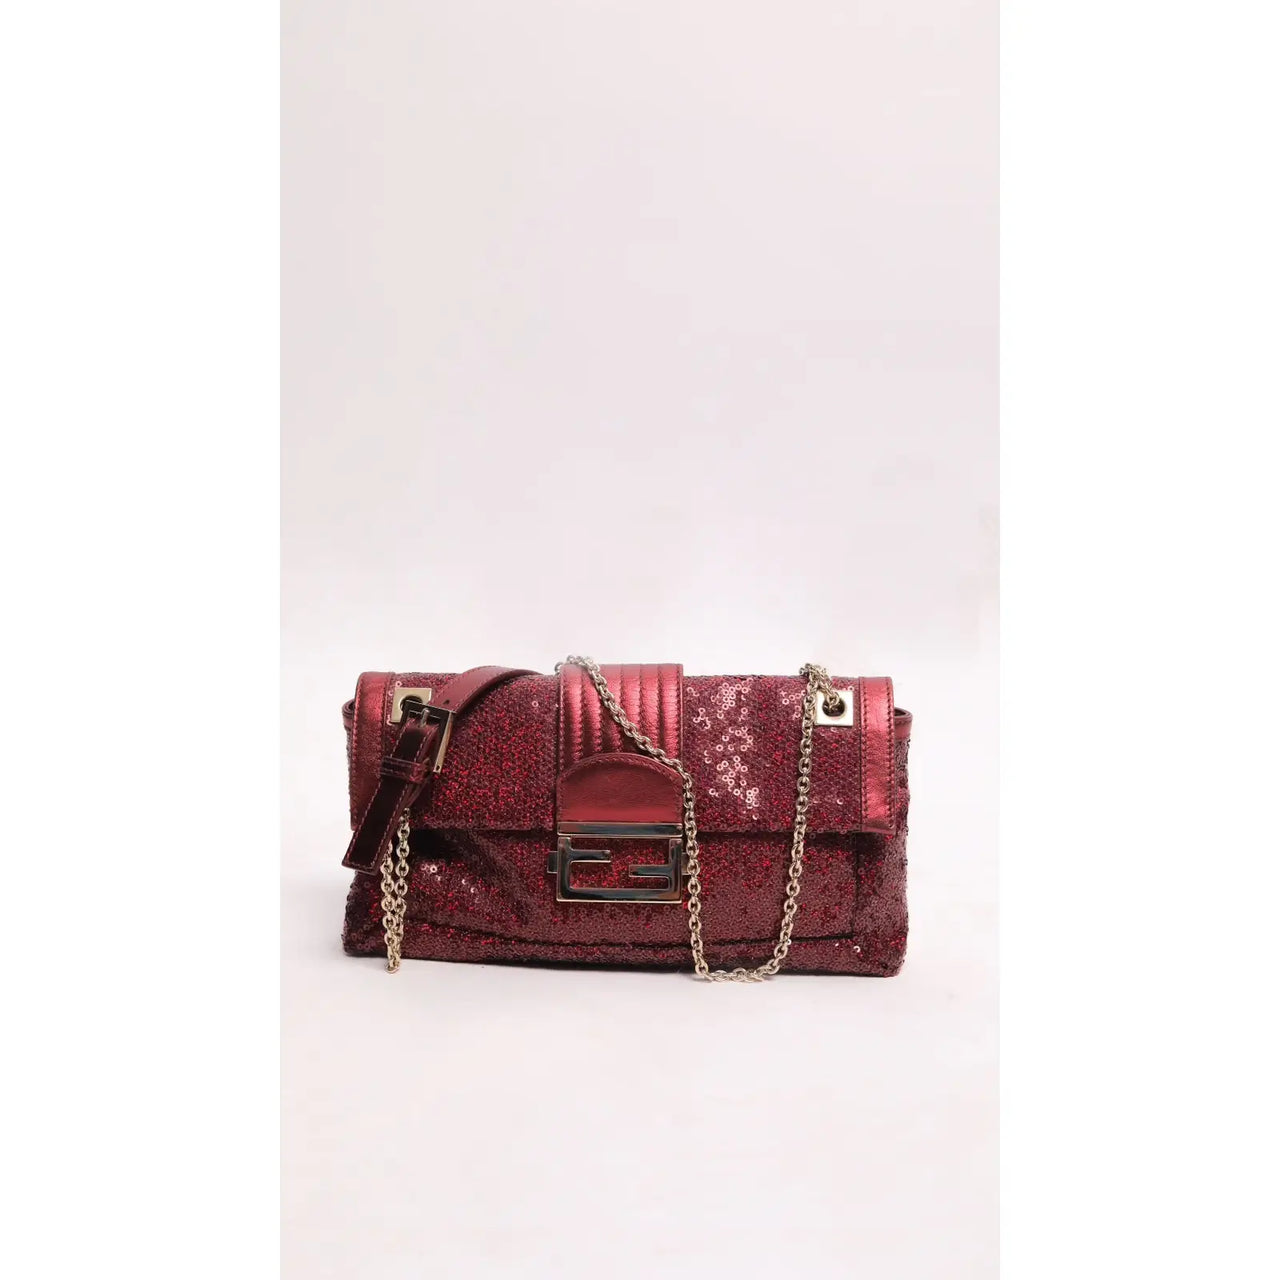 Fendi Authenticated Baguette 1997 Re-Edition Handbag